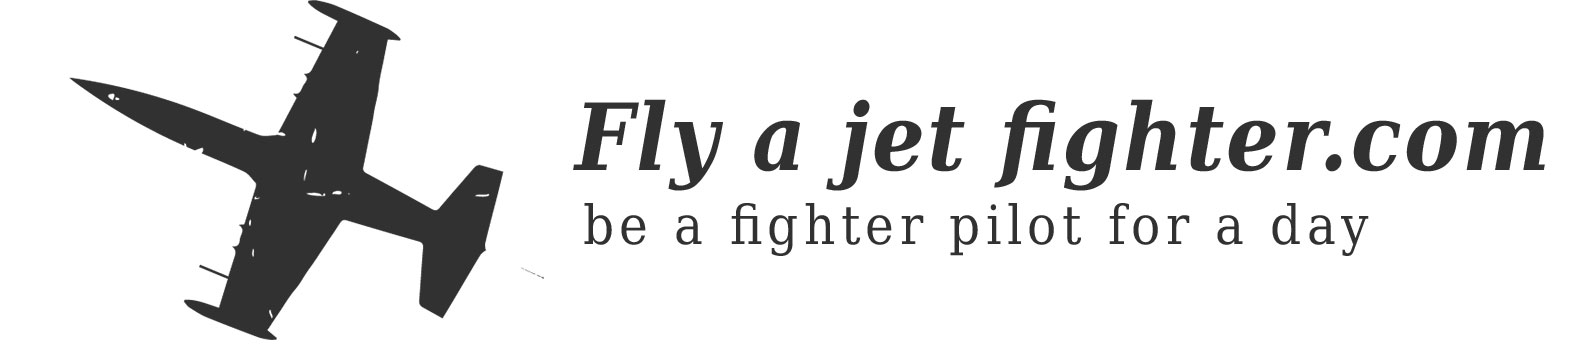 flyajetfighter logo